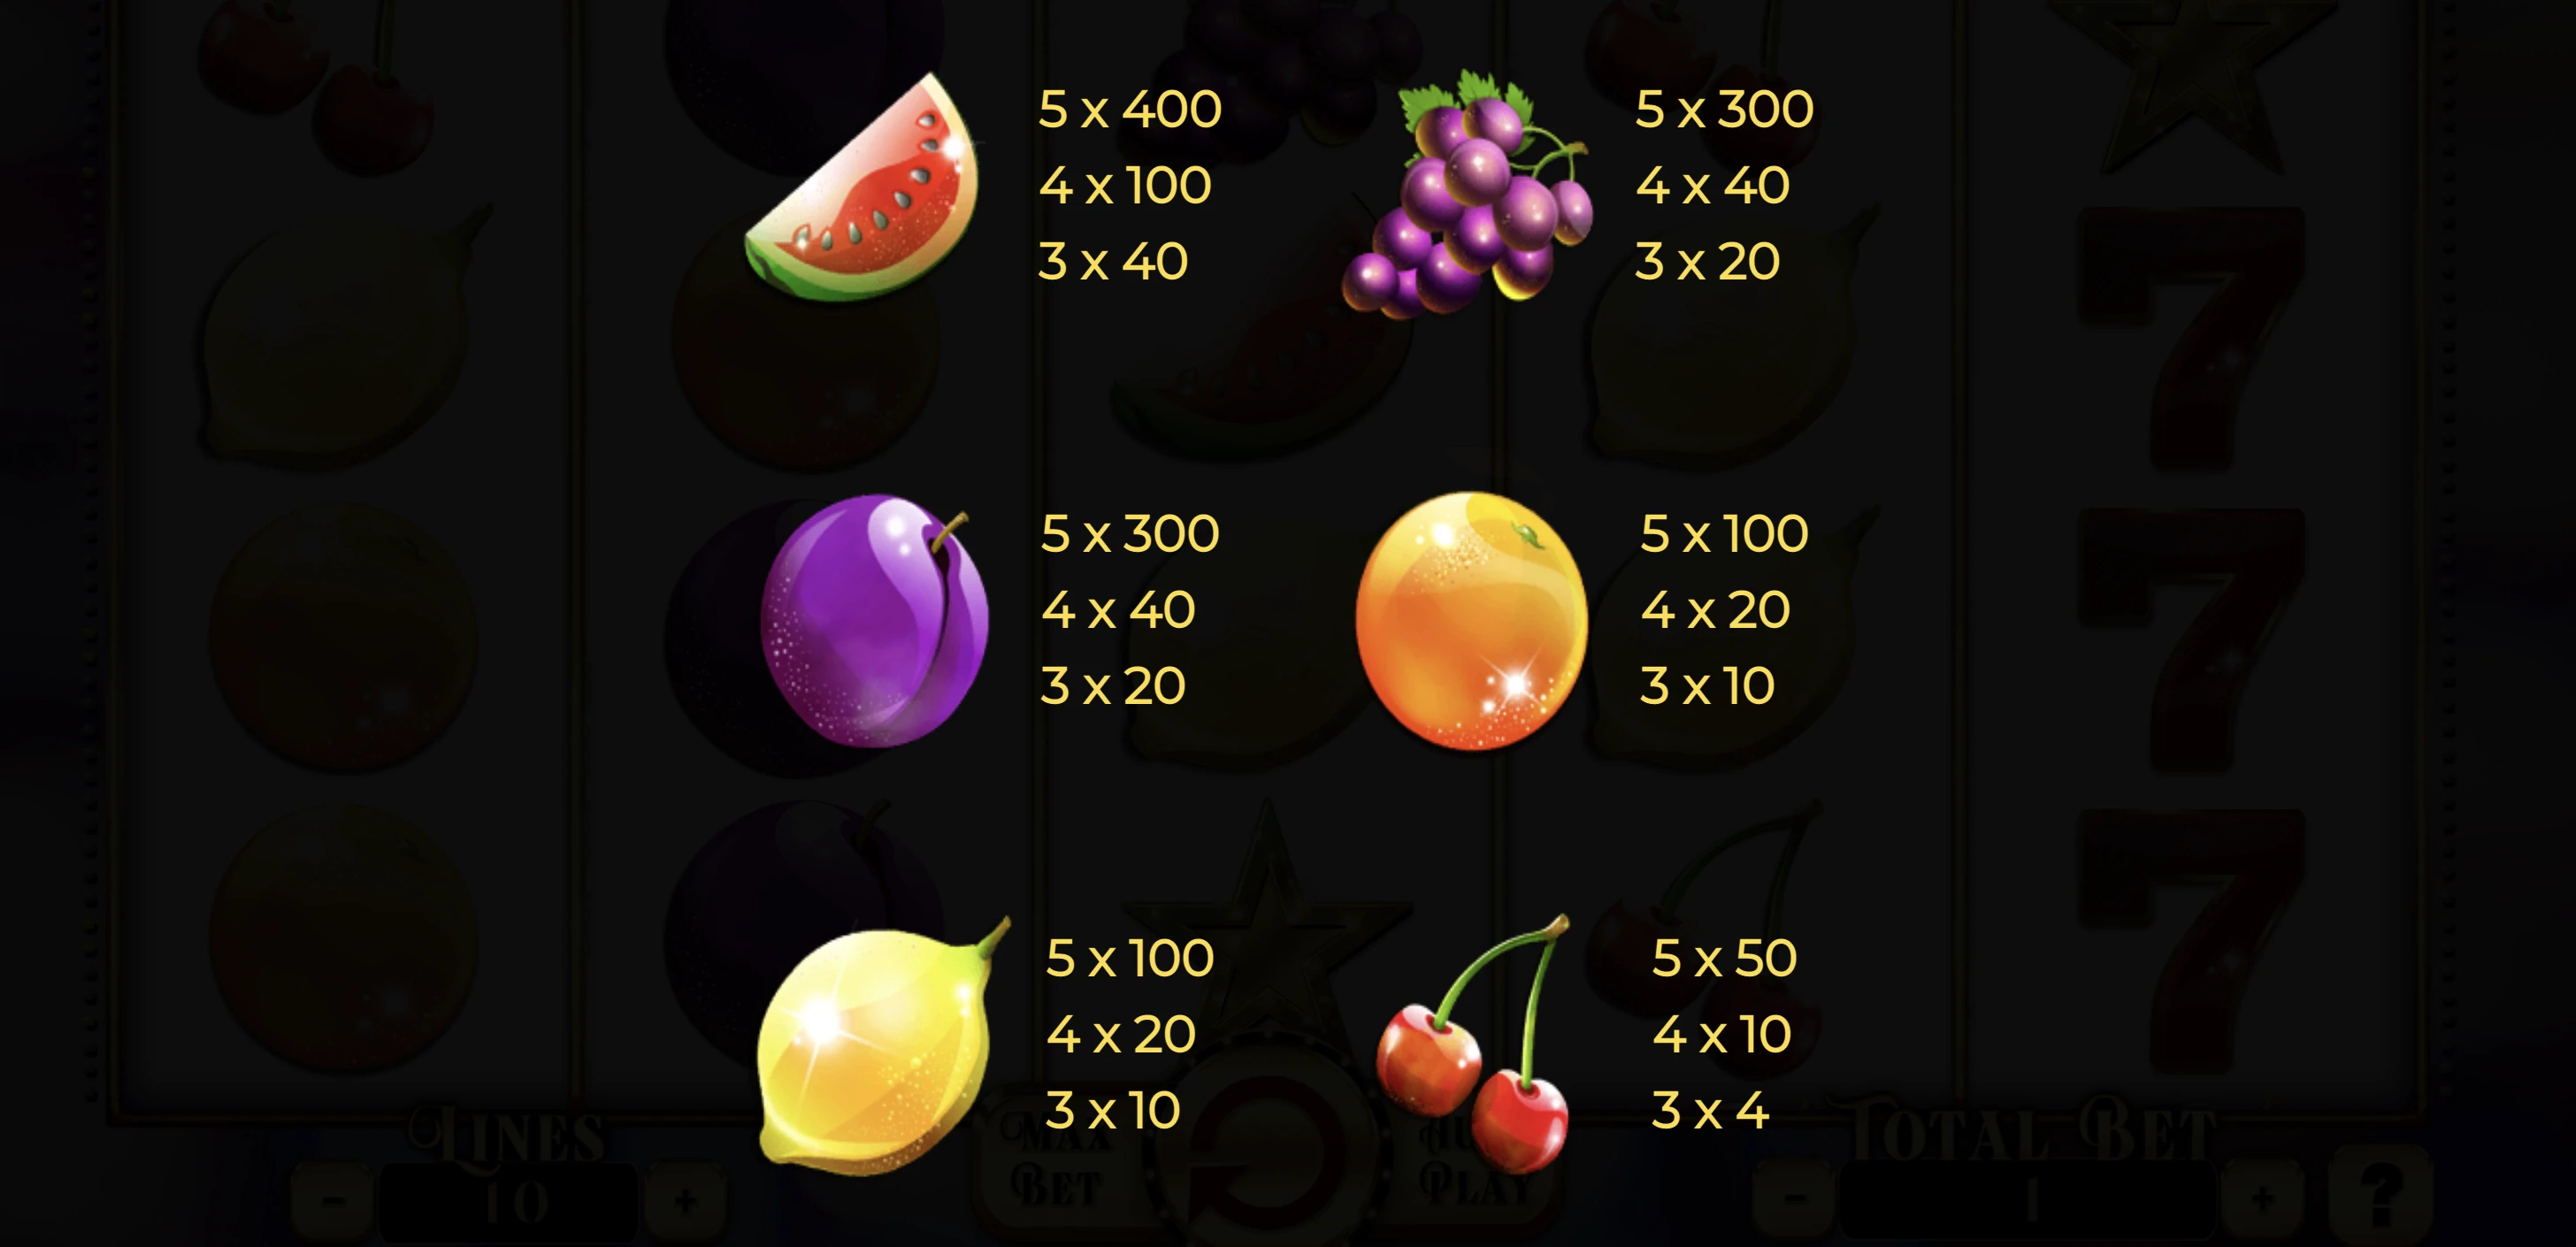 La machine à sous Penny Fruits Xtrem dispose de 3 symboles premiums et non premiums